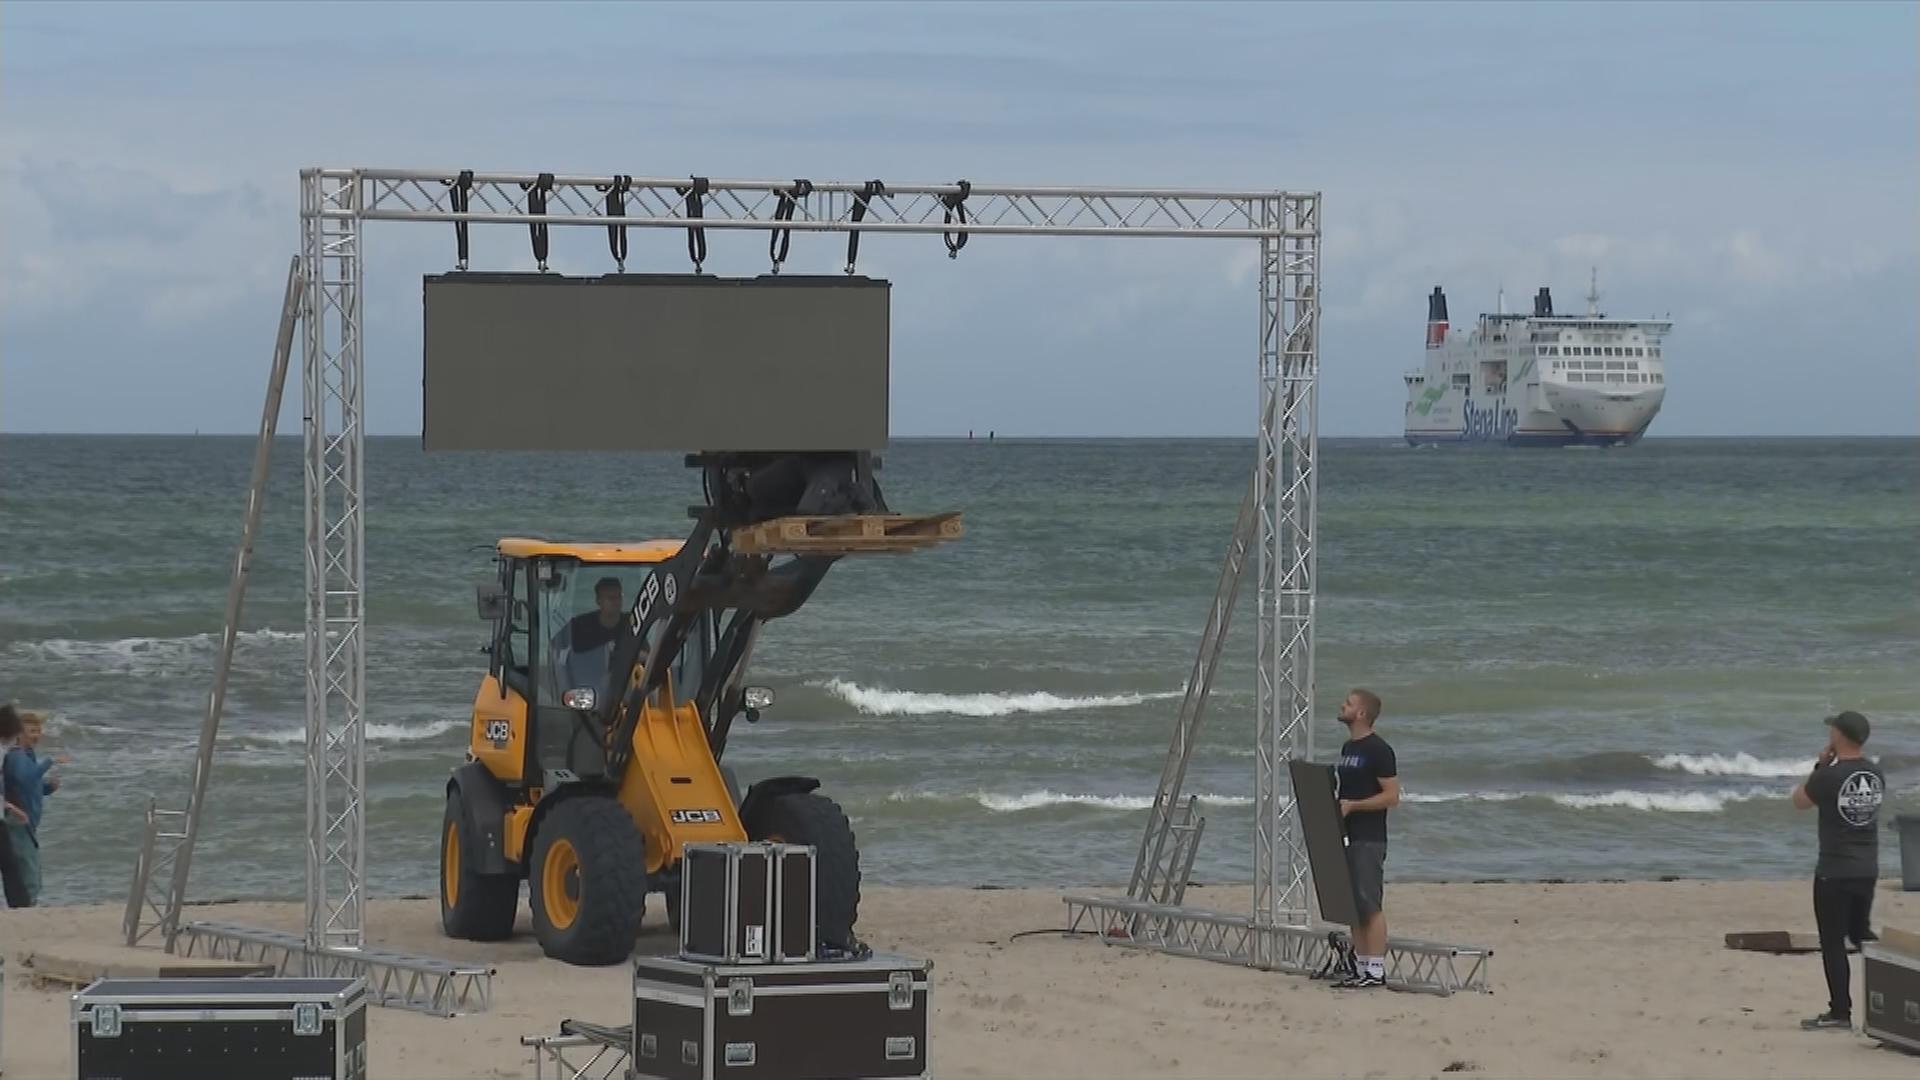 Am Strand in Warnemünde wird die Leinwand für das Public Viewing aufgebaut.